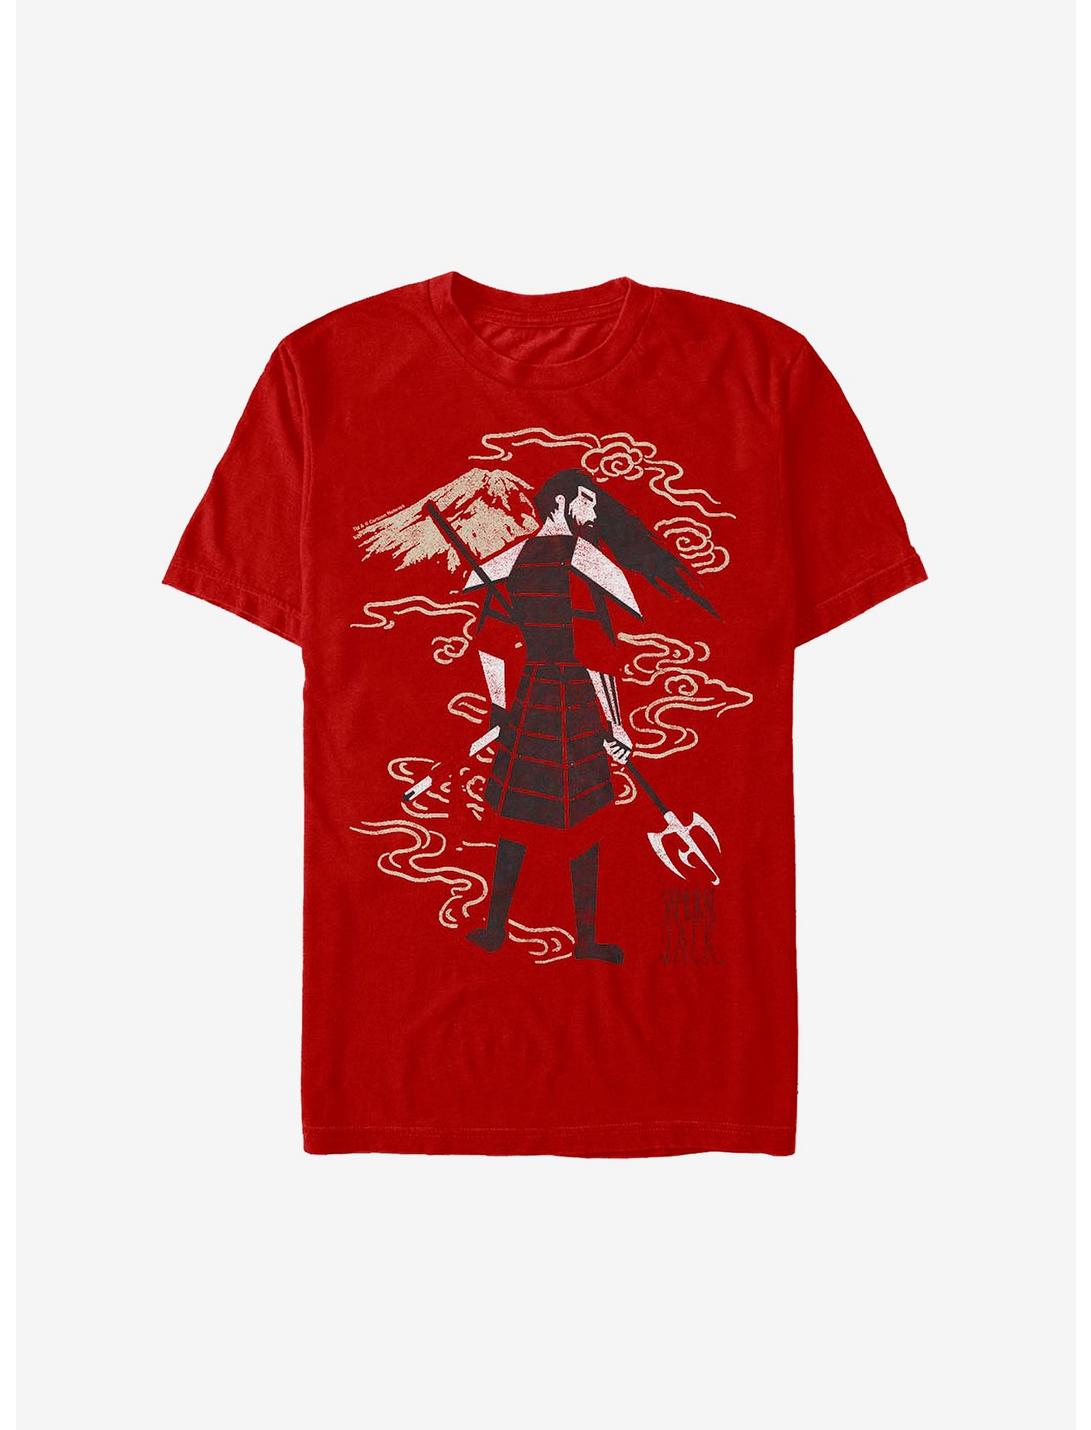 Samurai Jack Old Jack T-Shirt, RED, hi-res